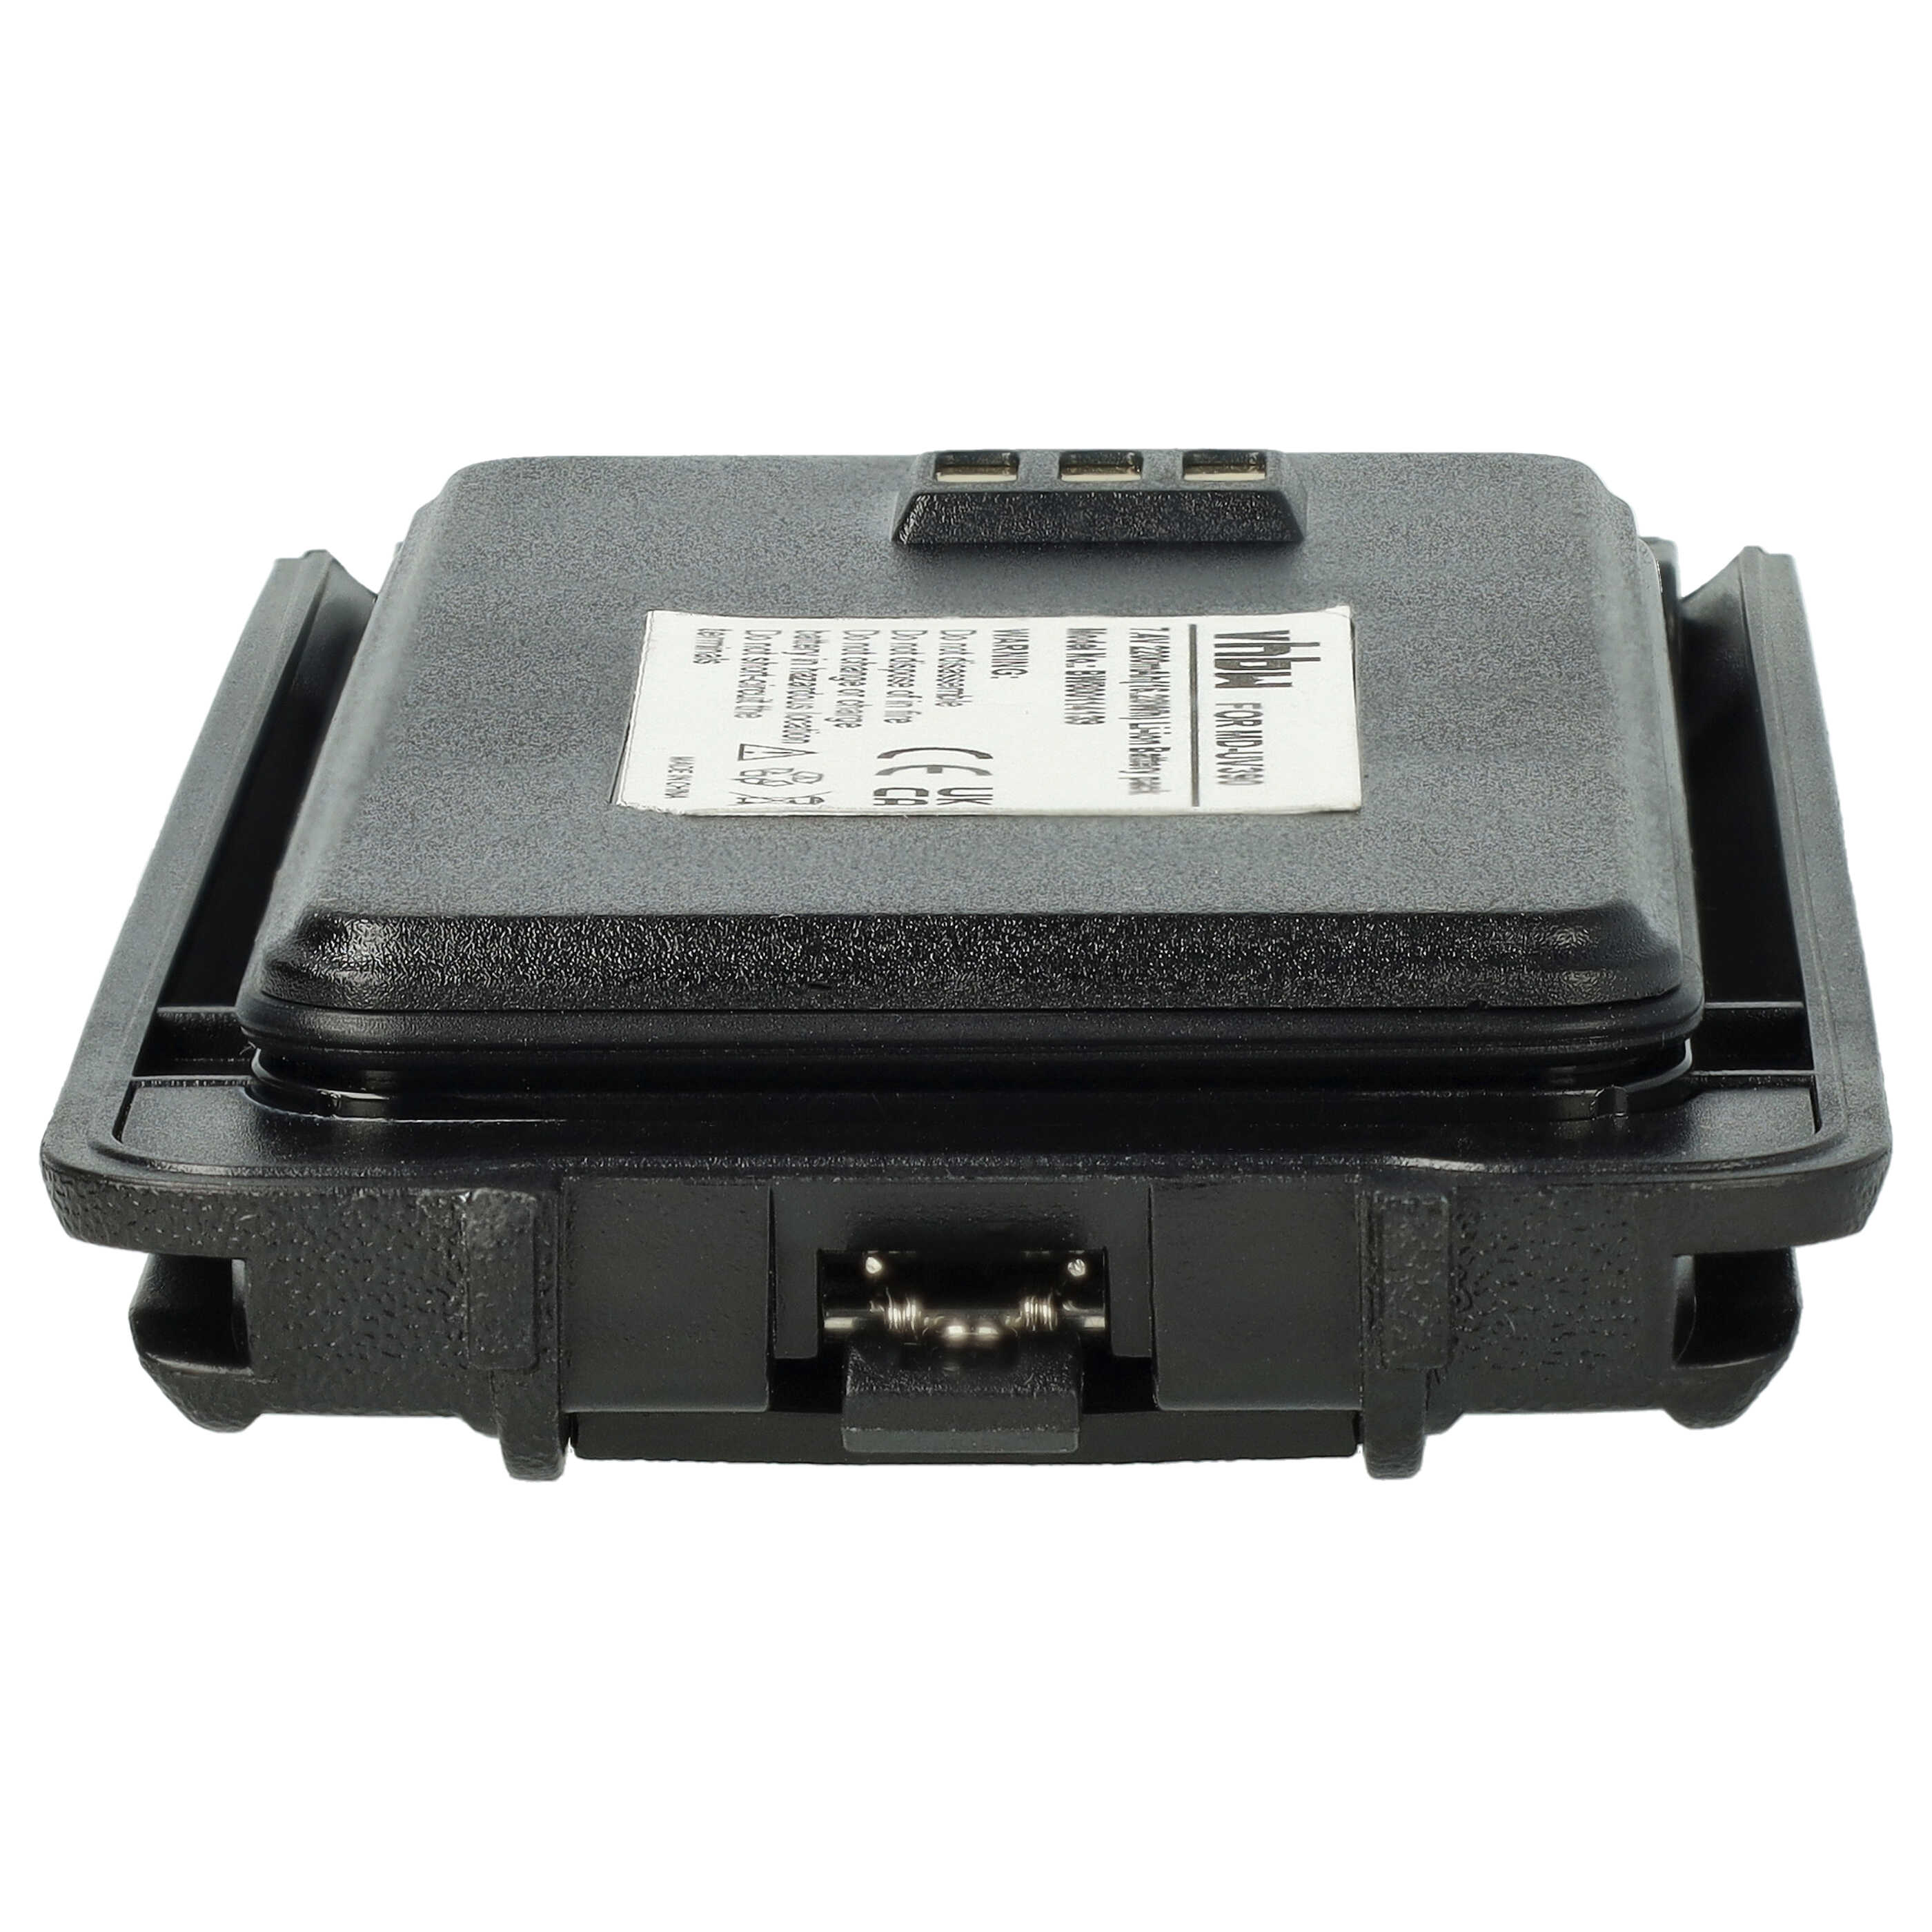 Batteria per dispositivo radio sostituisce Harico BL50 Retevis - 2200mAh 7,4V Li-Ion